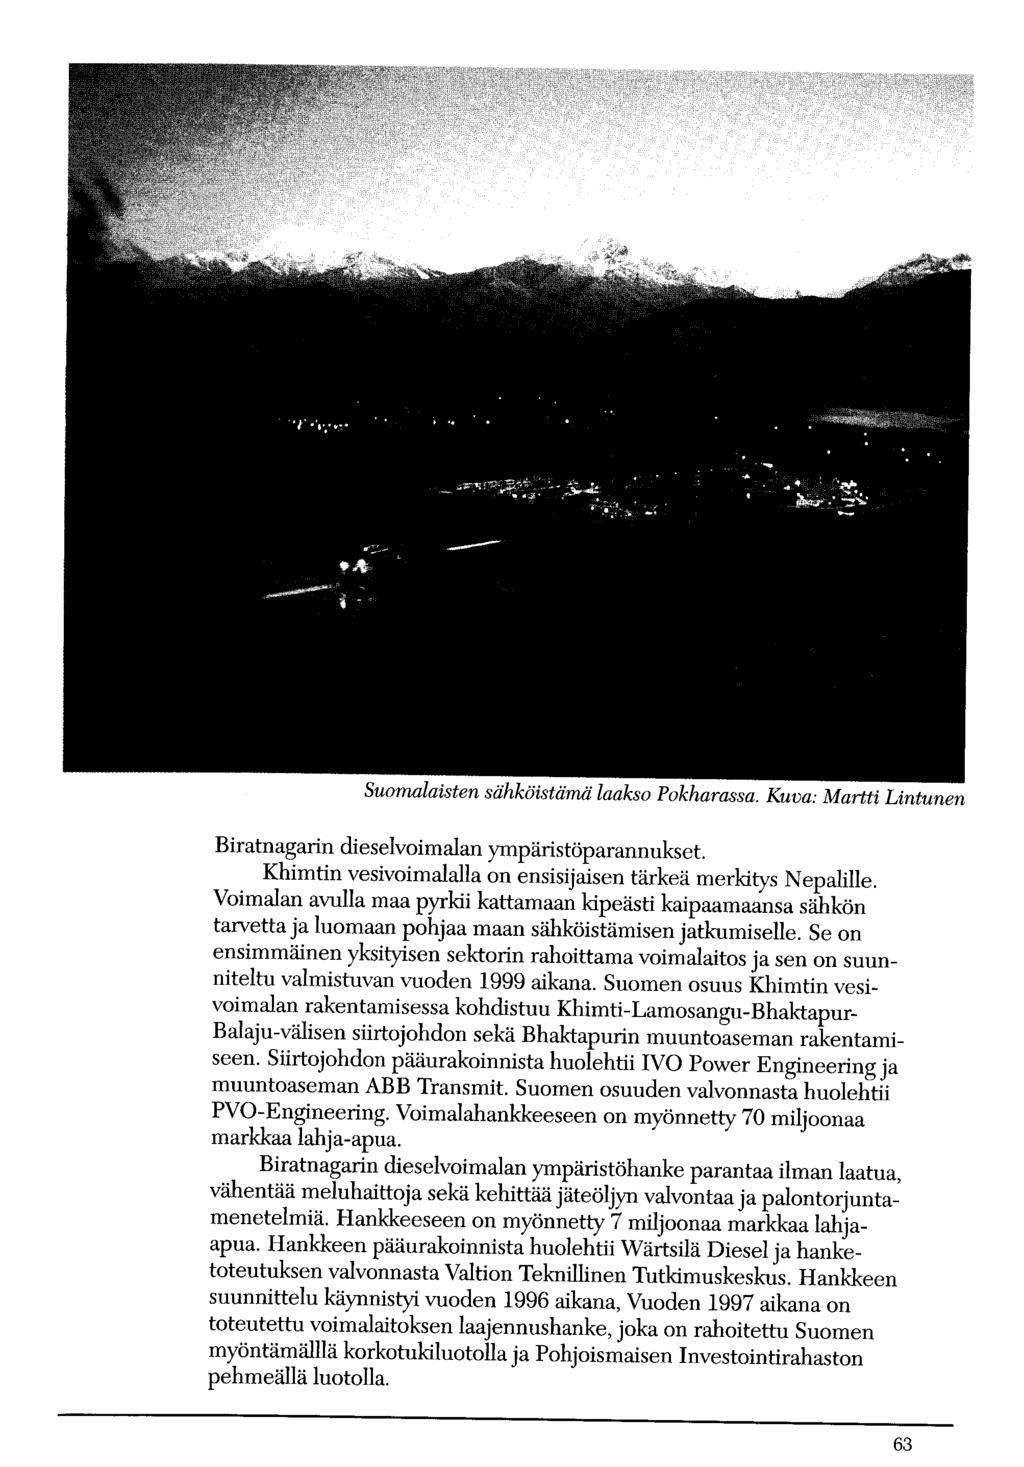 Suomalaisten sähköistärnä laakso Pokharassa. Kuva: Martti Lintunen Biratnagarin dieselvoimalan ympäristöparannukset Khimtin vesivoimalalla on ensisijaisen tärkeä merkitys Nepalille.